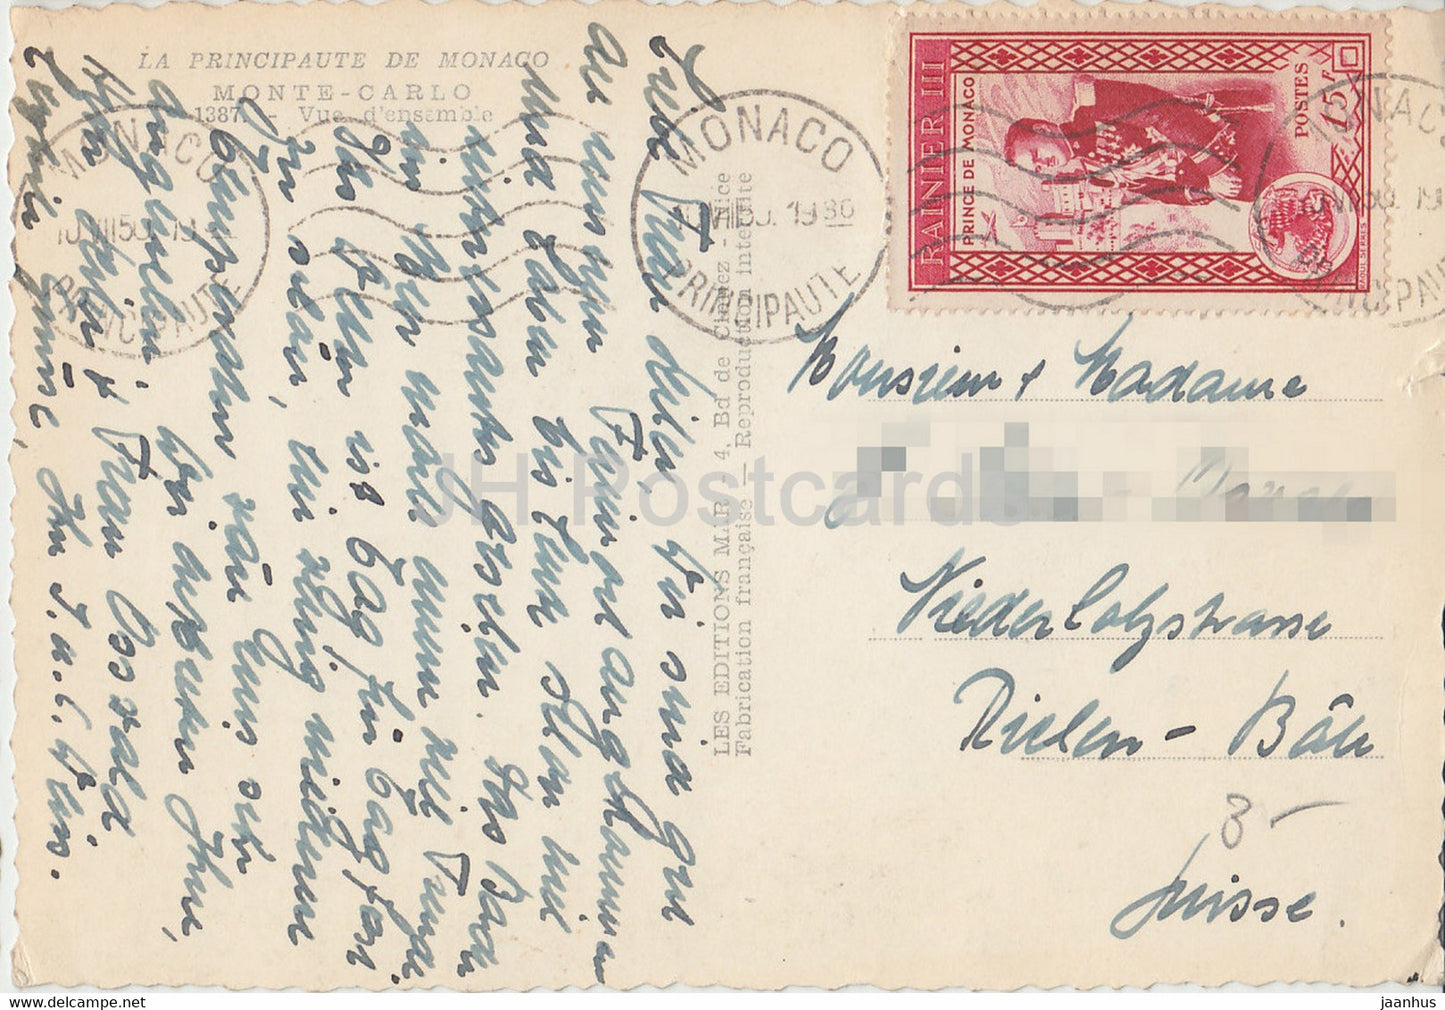 Monte Carlo - Vue d'ensemble - 1387 - carte postale ancienne - 1950 - Monaco - occasion